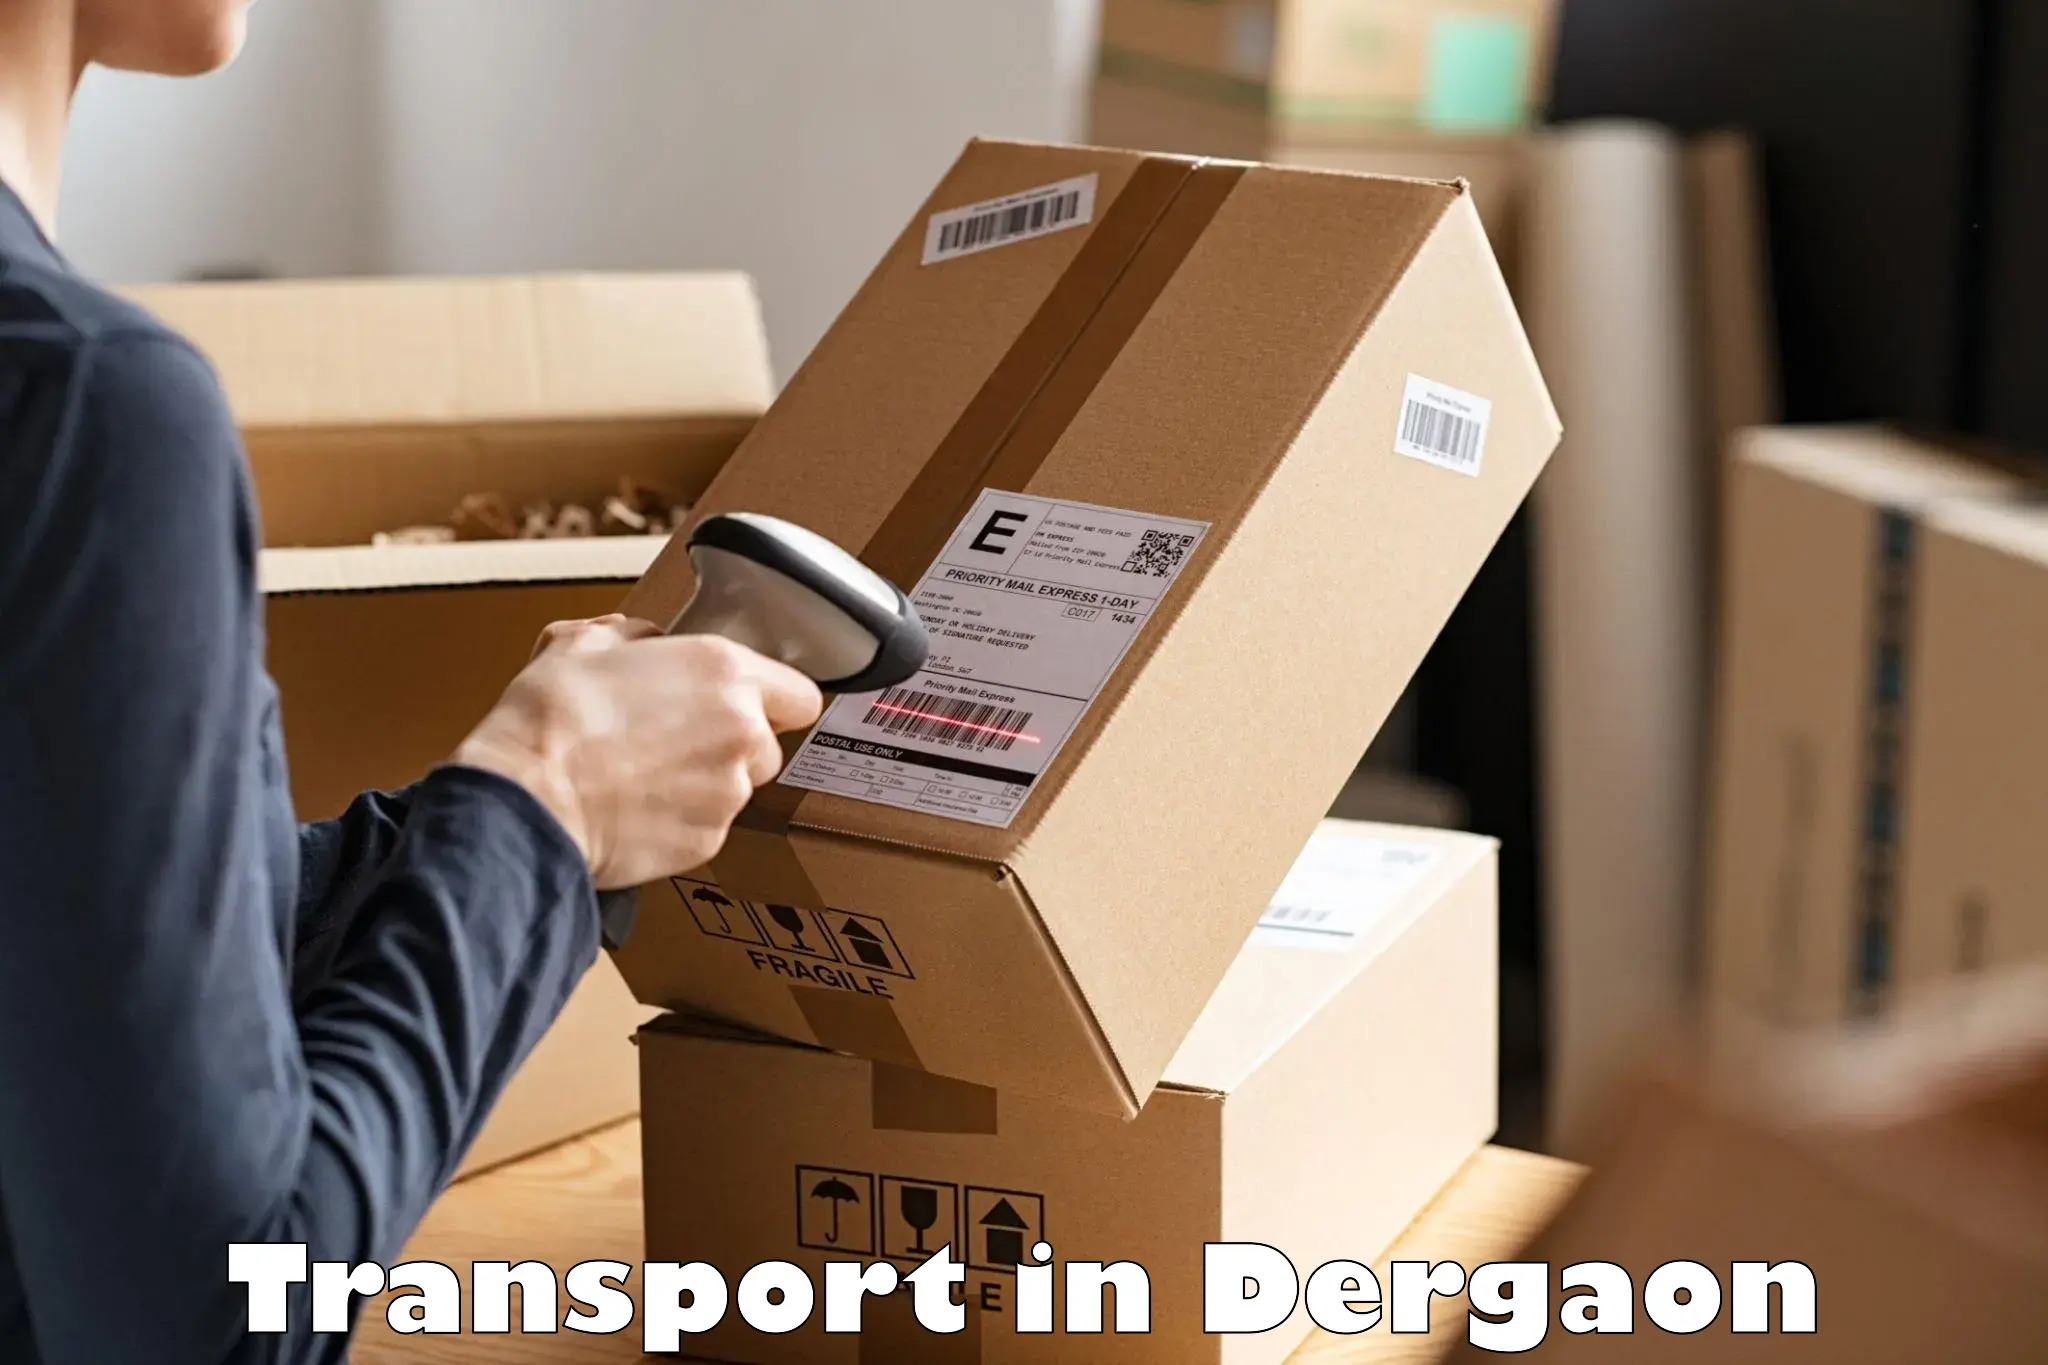 Cargo transportation services in Dergaon